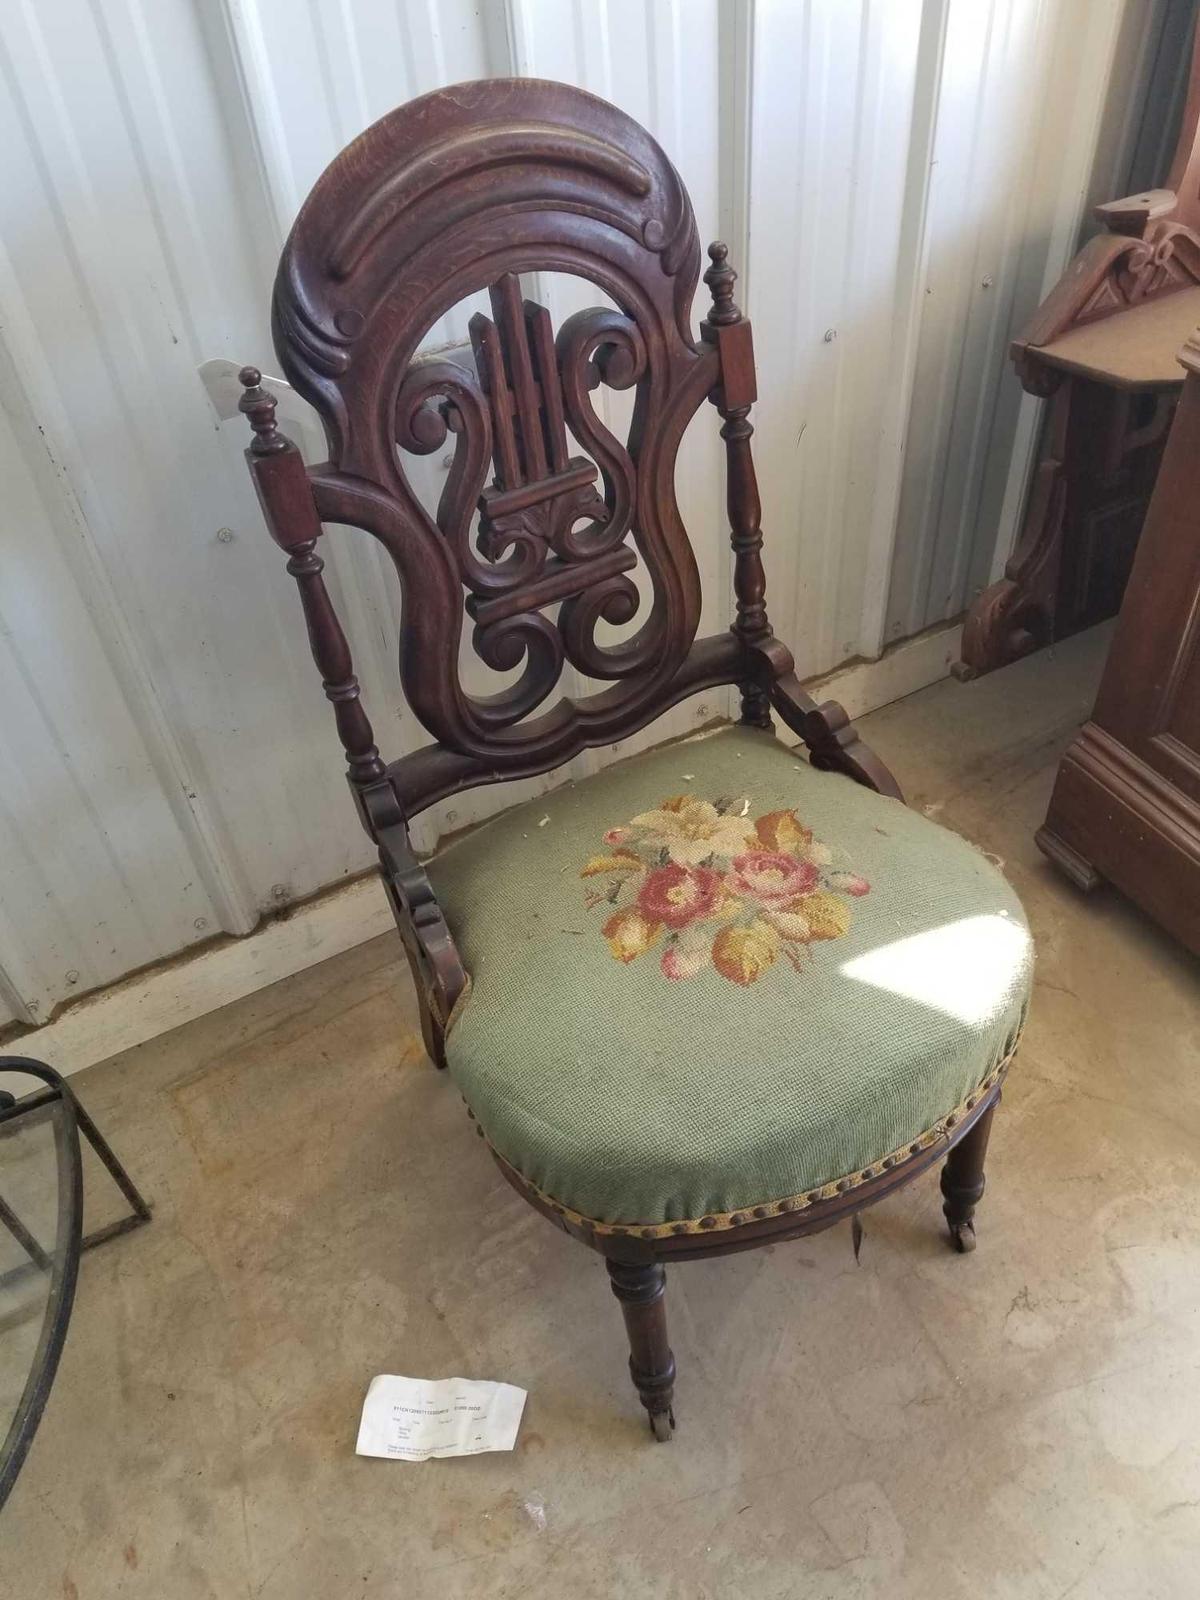 Victorian chair